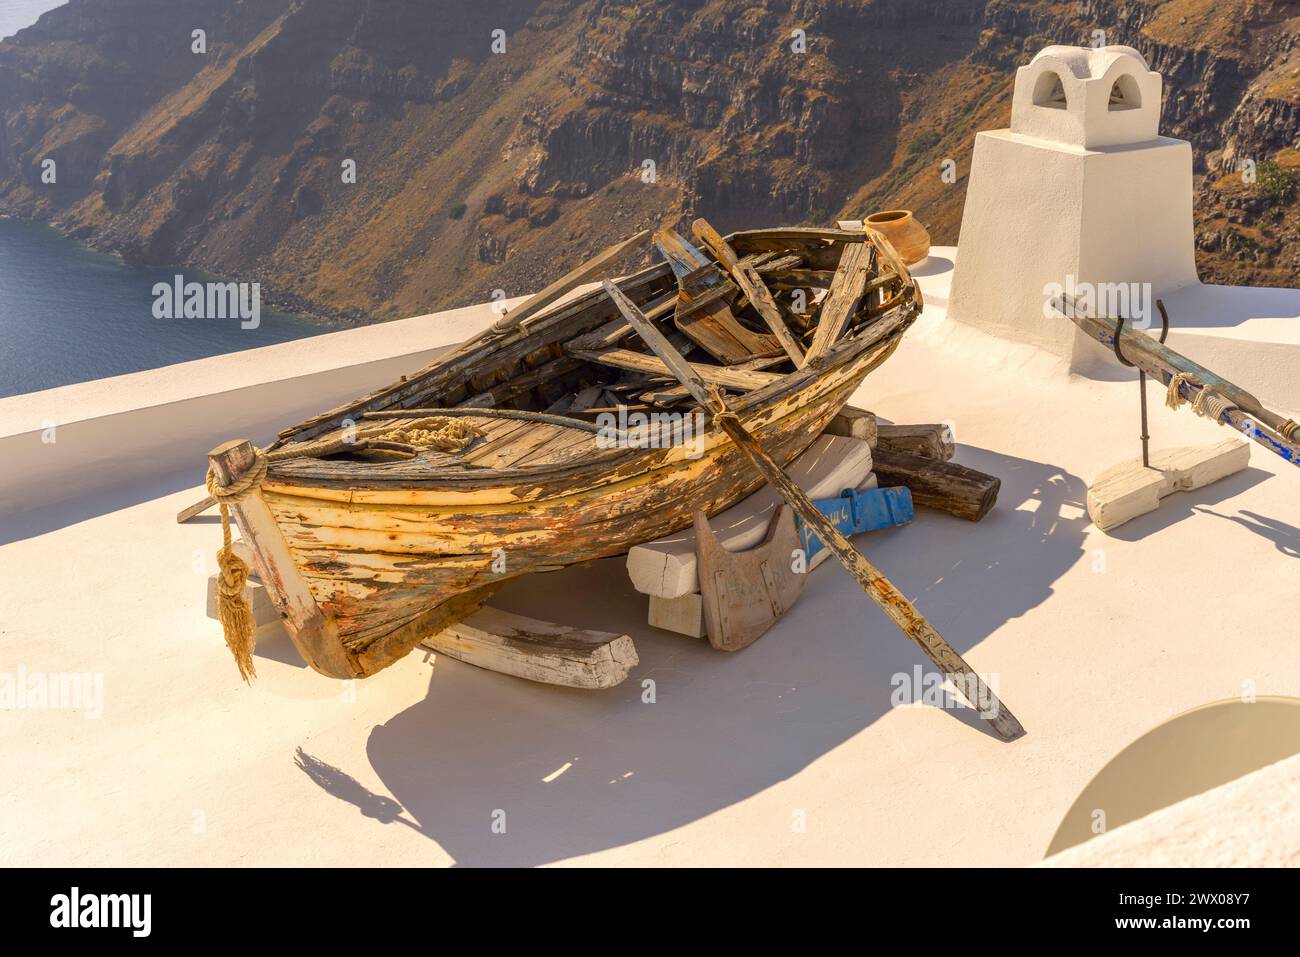 La vecchia barca a remi malandata è usata per decorare l'area di fronte a una dimora che si affaccia sulla Caldera di Santorini e sul Mar Egeo Foto Stock